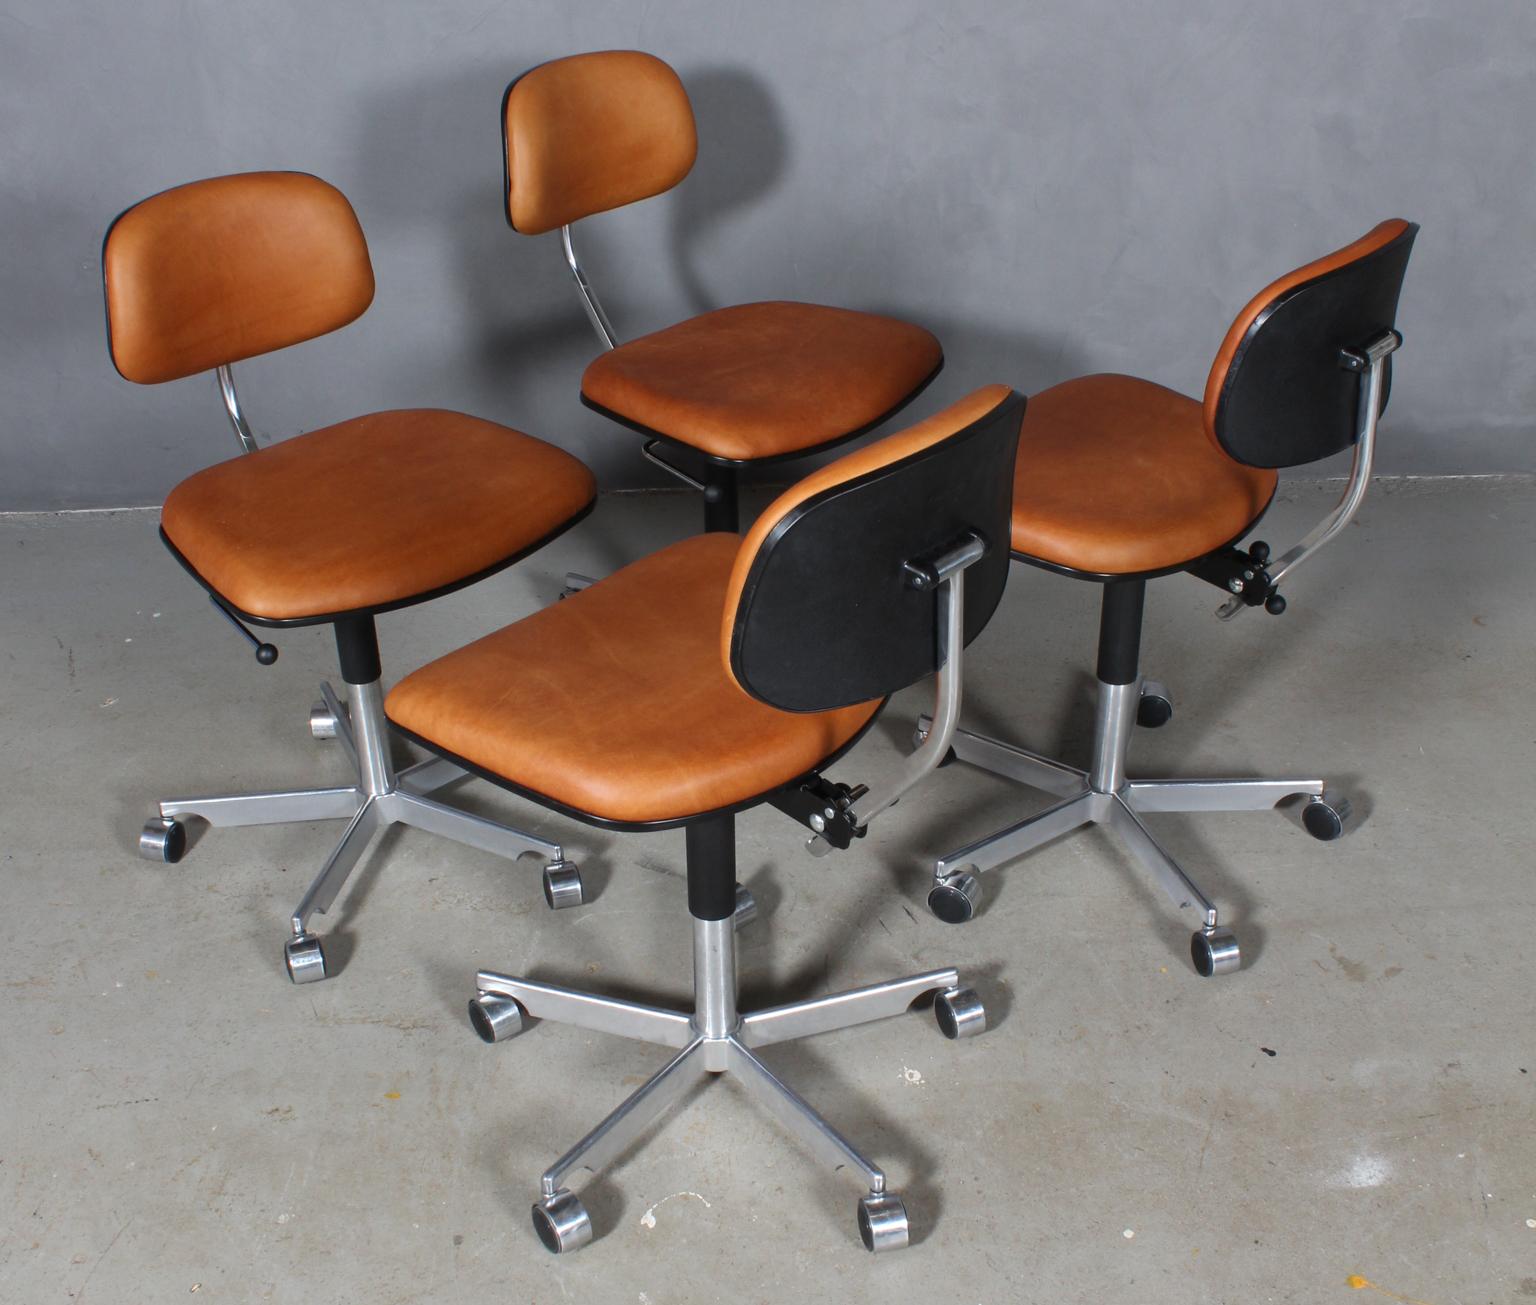 Chaise de bureau Kevi conçue par Jørgen Rasmussen. Avec réglage de la hauteur, de l'inclinaison et autres. 

Nouvelle garniture en cuir aniline de couleur fauve.